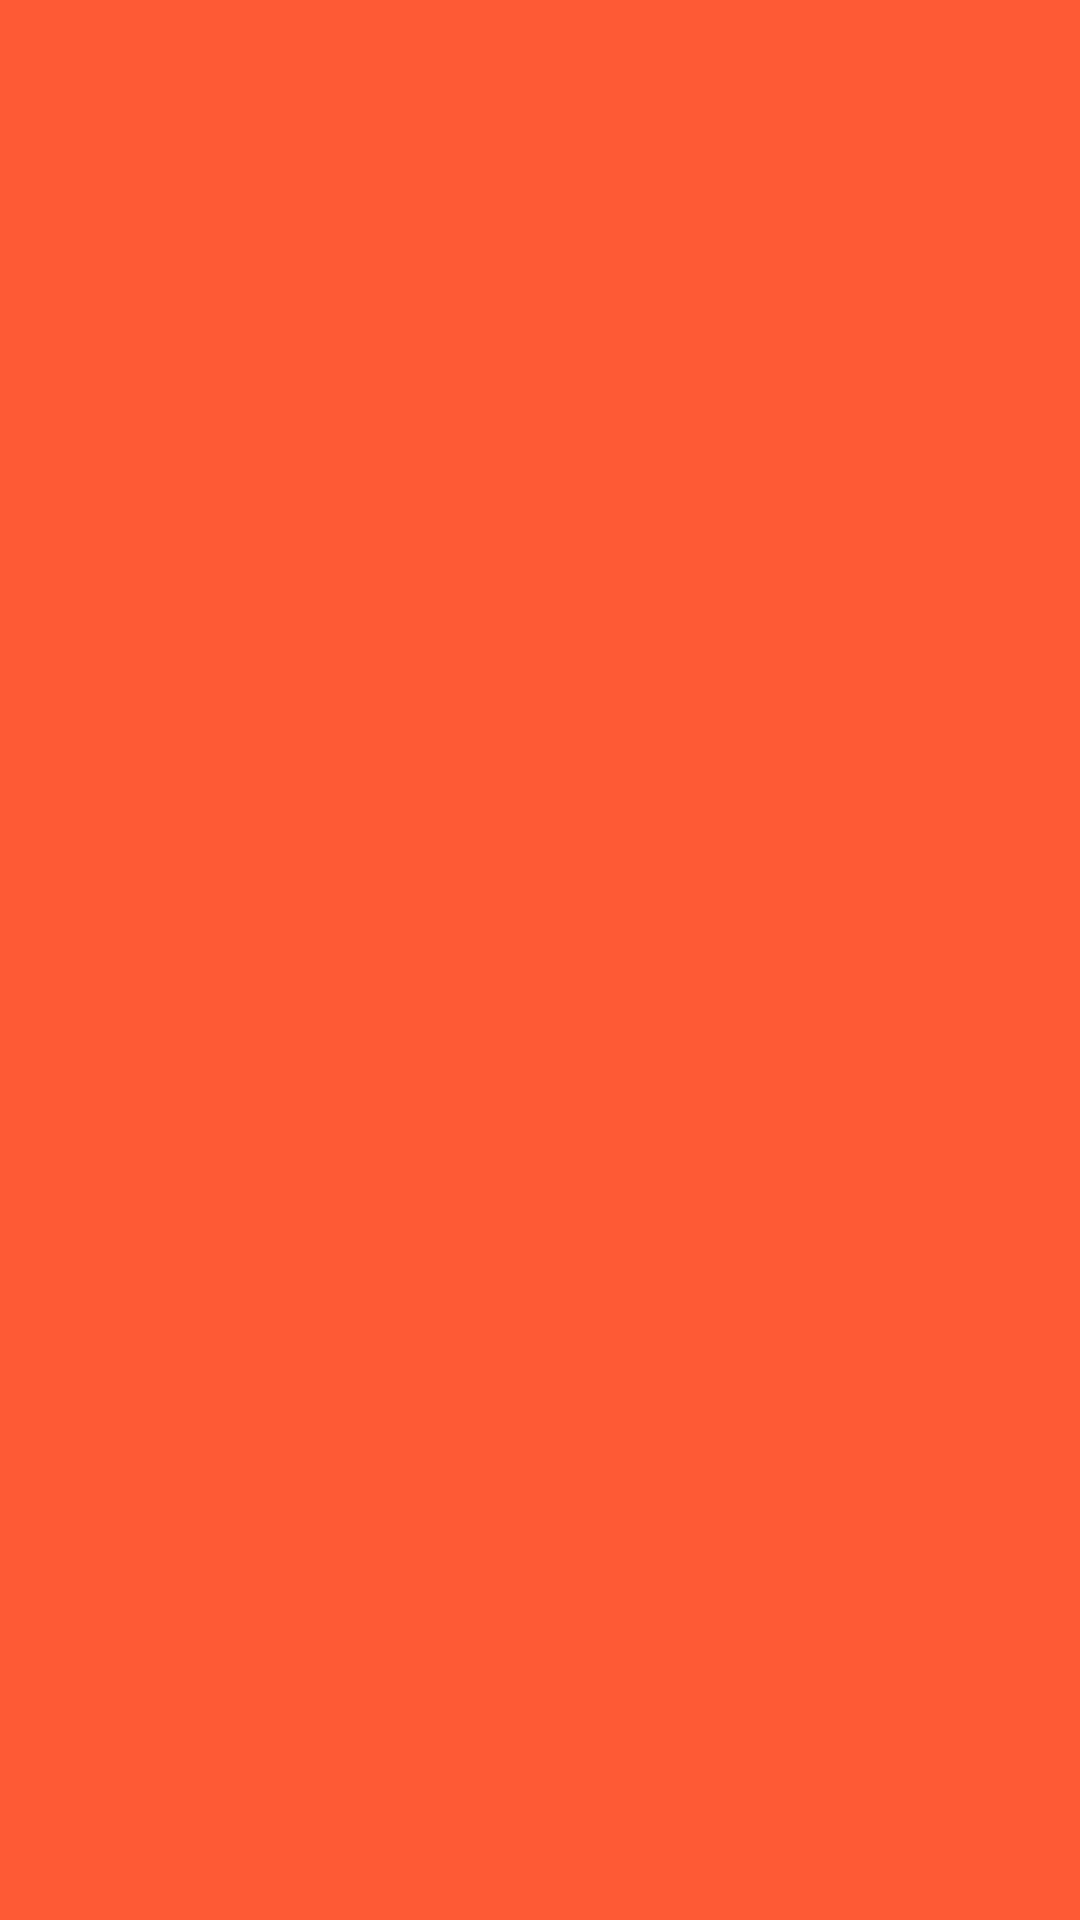 1080x1920 Portland Orange Solid Color Background